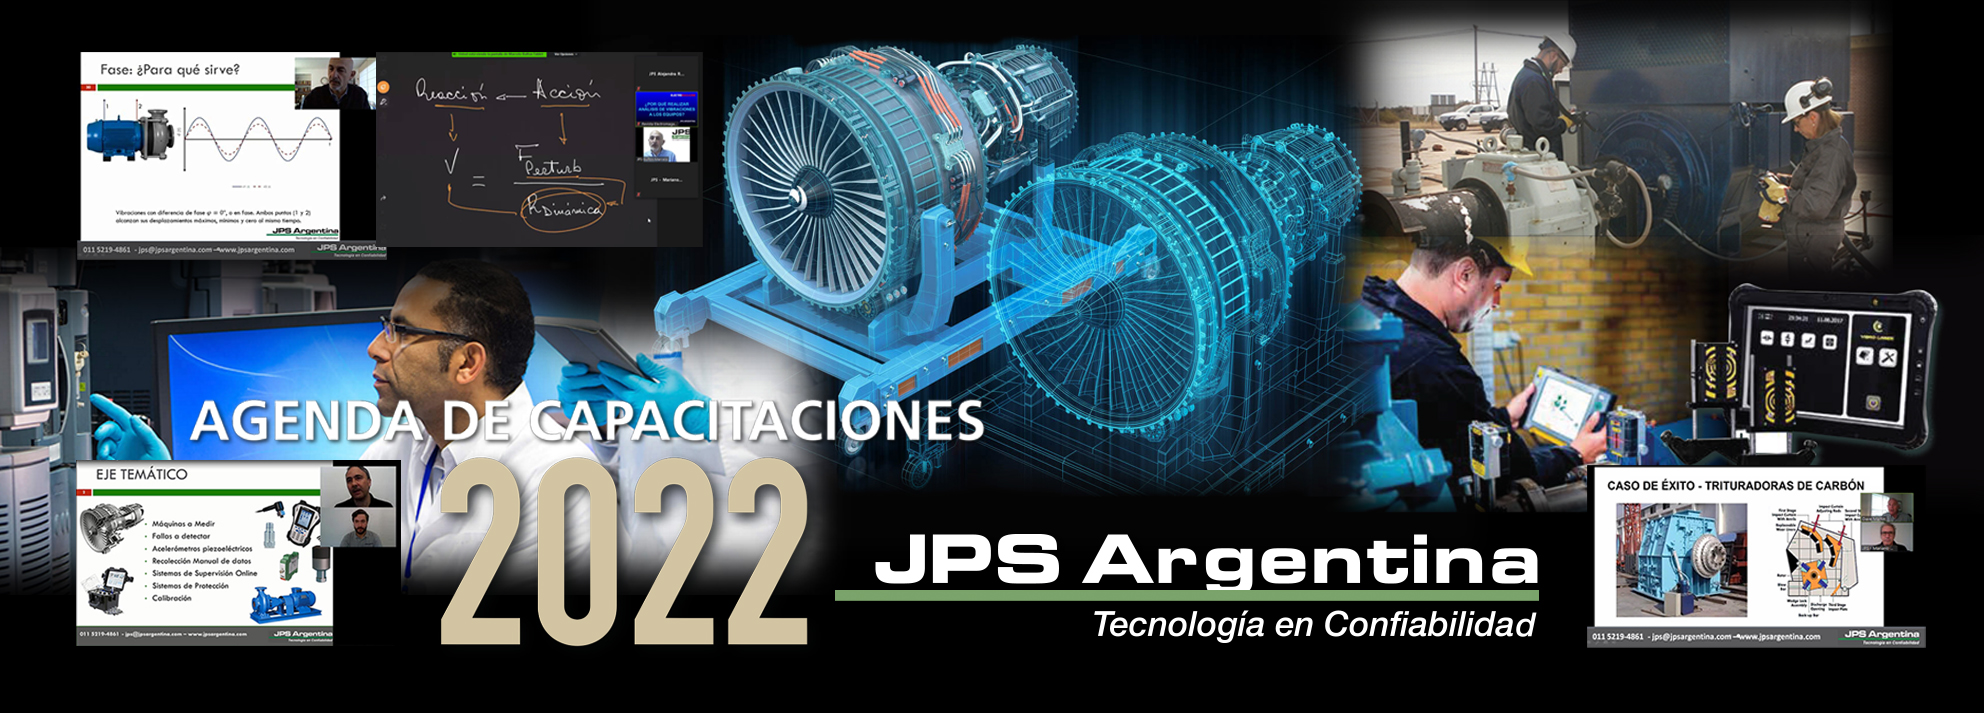 JPS ARGENTINA – AGENDA DE CAPACITACIONES 2022